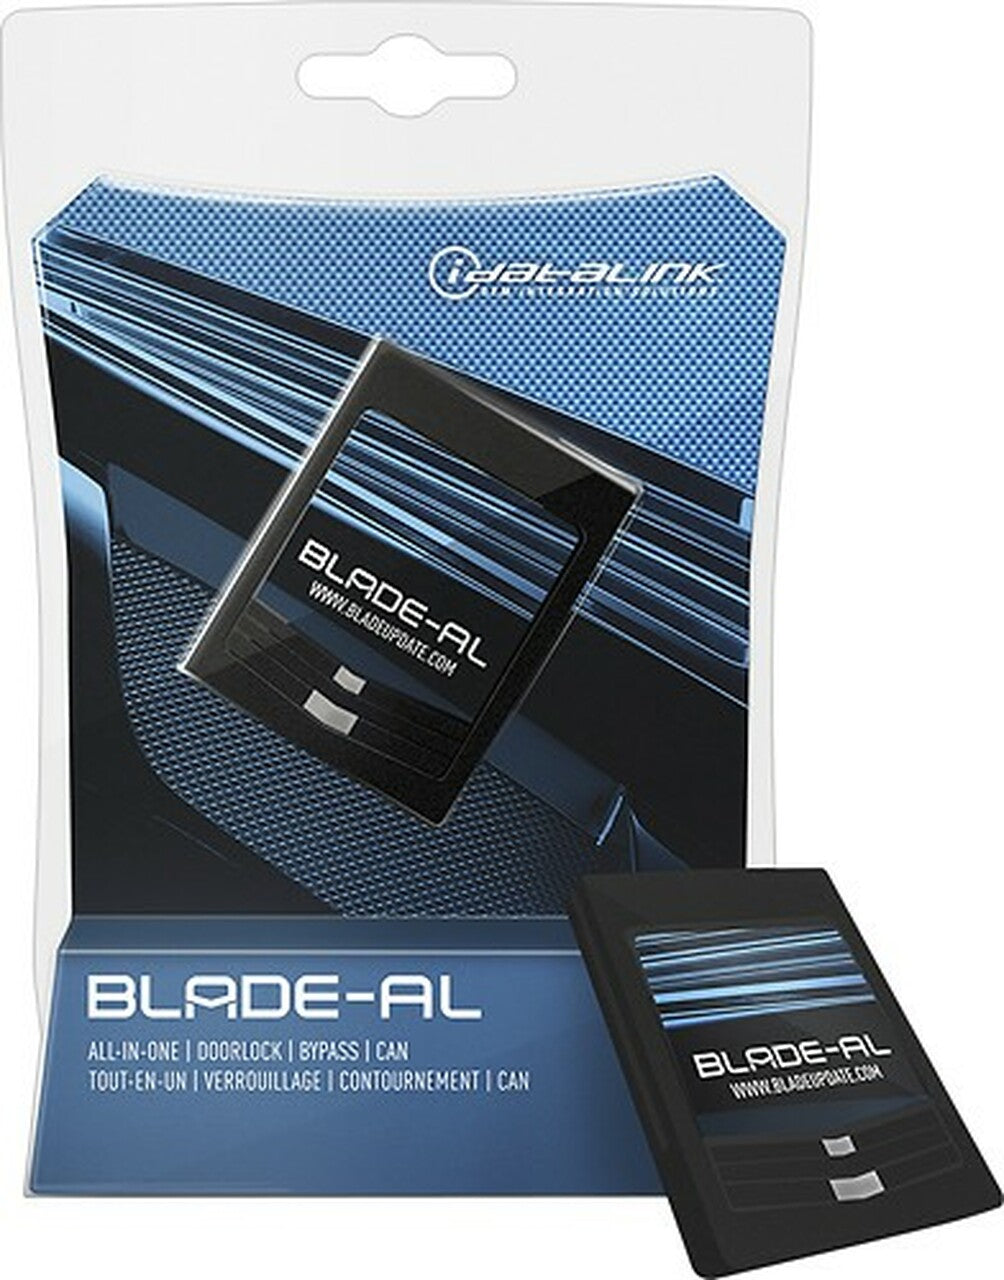 Idatalink Blade-AL Bypass Module